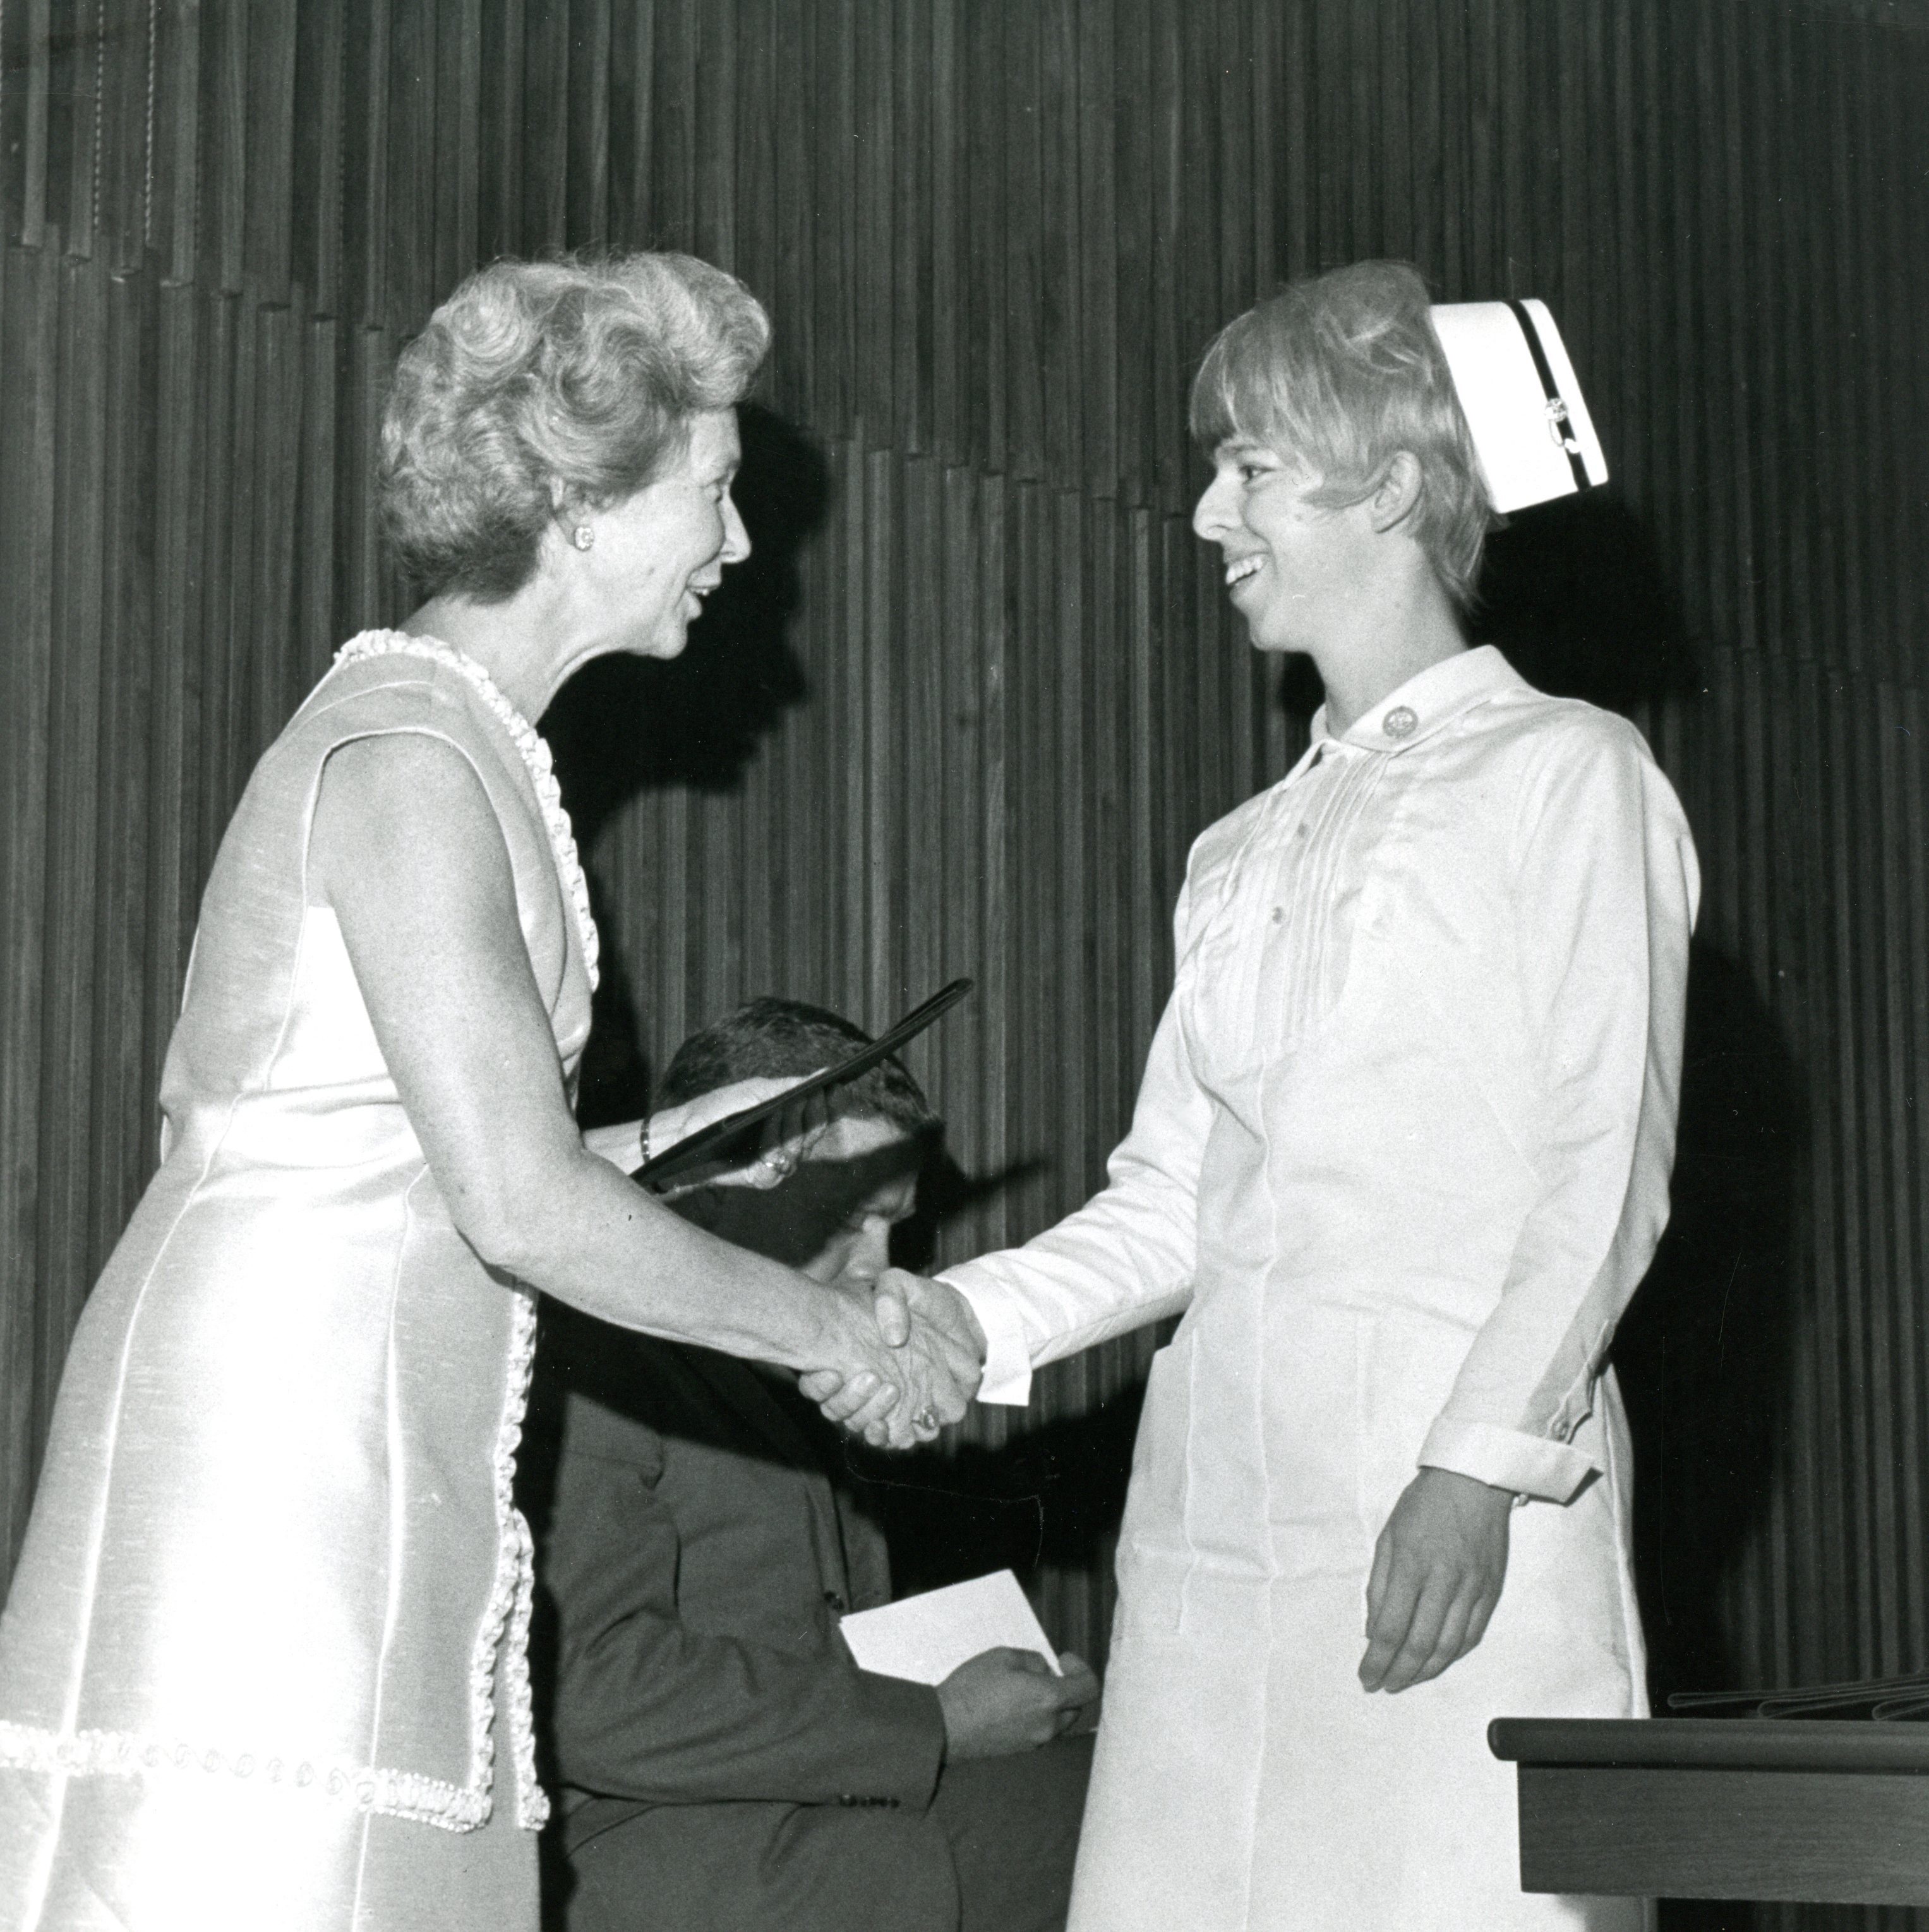 Deux femmes souriantes se serrent la main. L’une d’entre elles porte une robe habillée et l’autre un uniforme d’infirmière avec coiffe. Un homme se tient à l’arrière-plan.